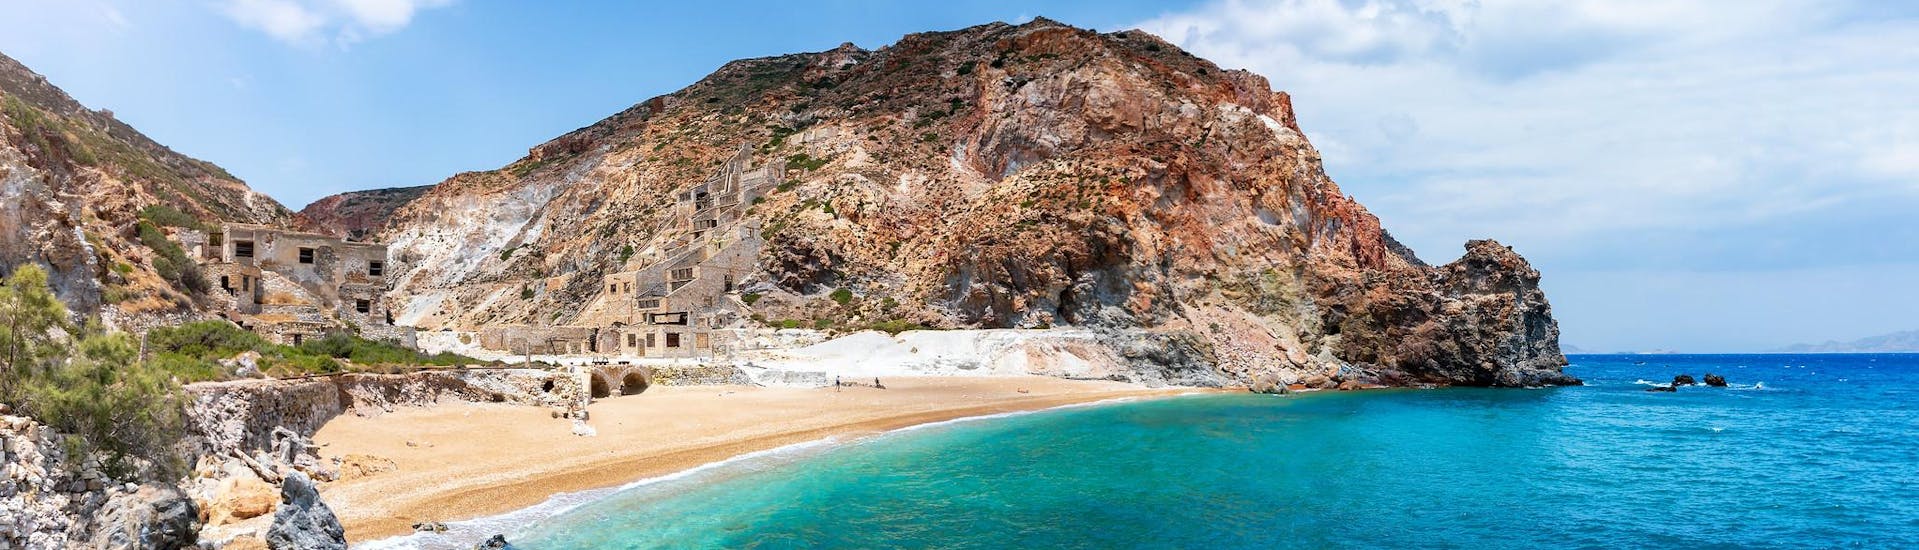 La remota spiaggia di Thiorichia sull'isola di Milos, che è possibile visitare con una gita in barca.